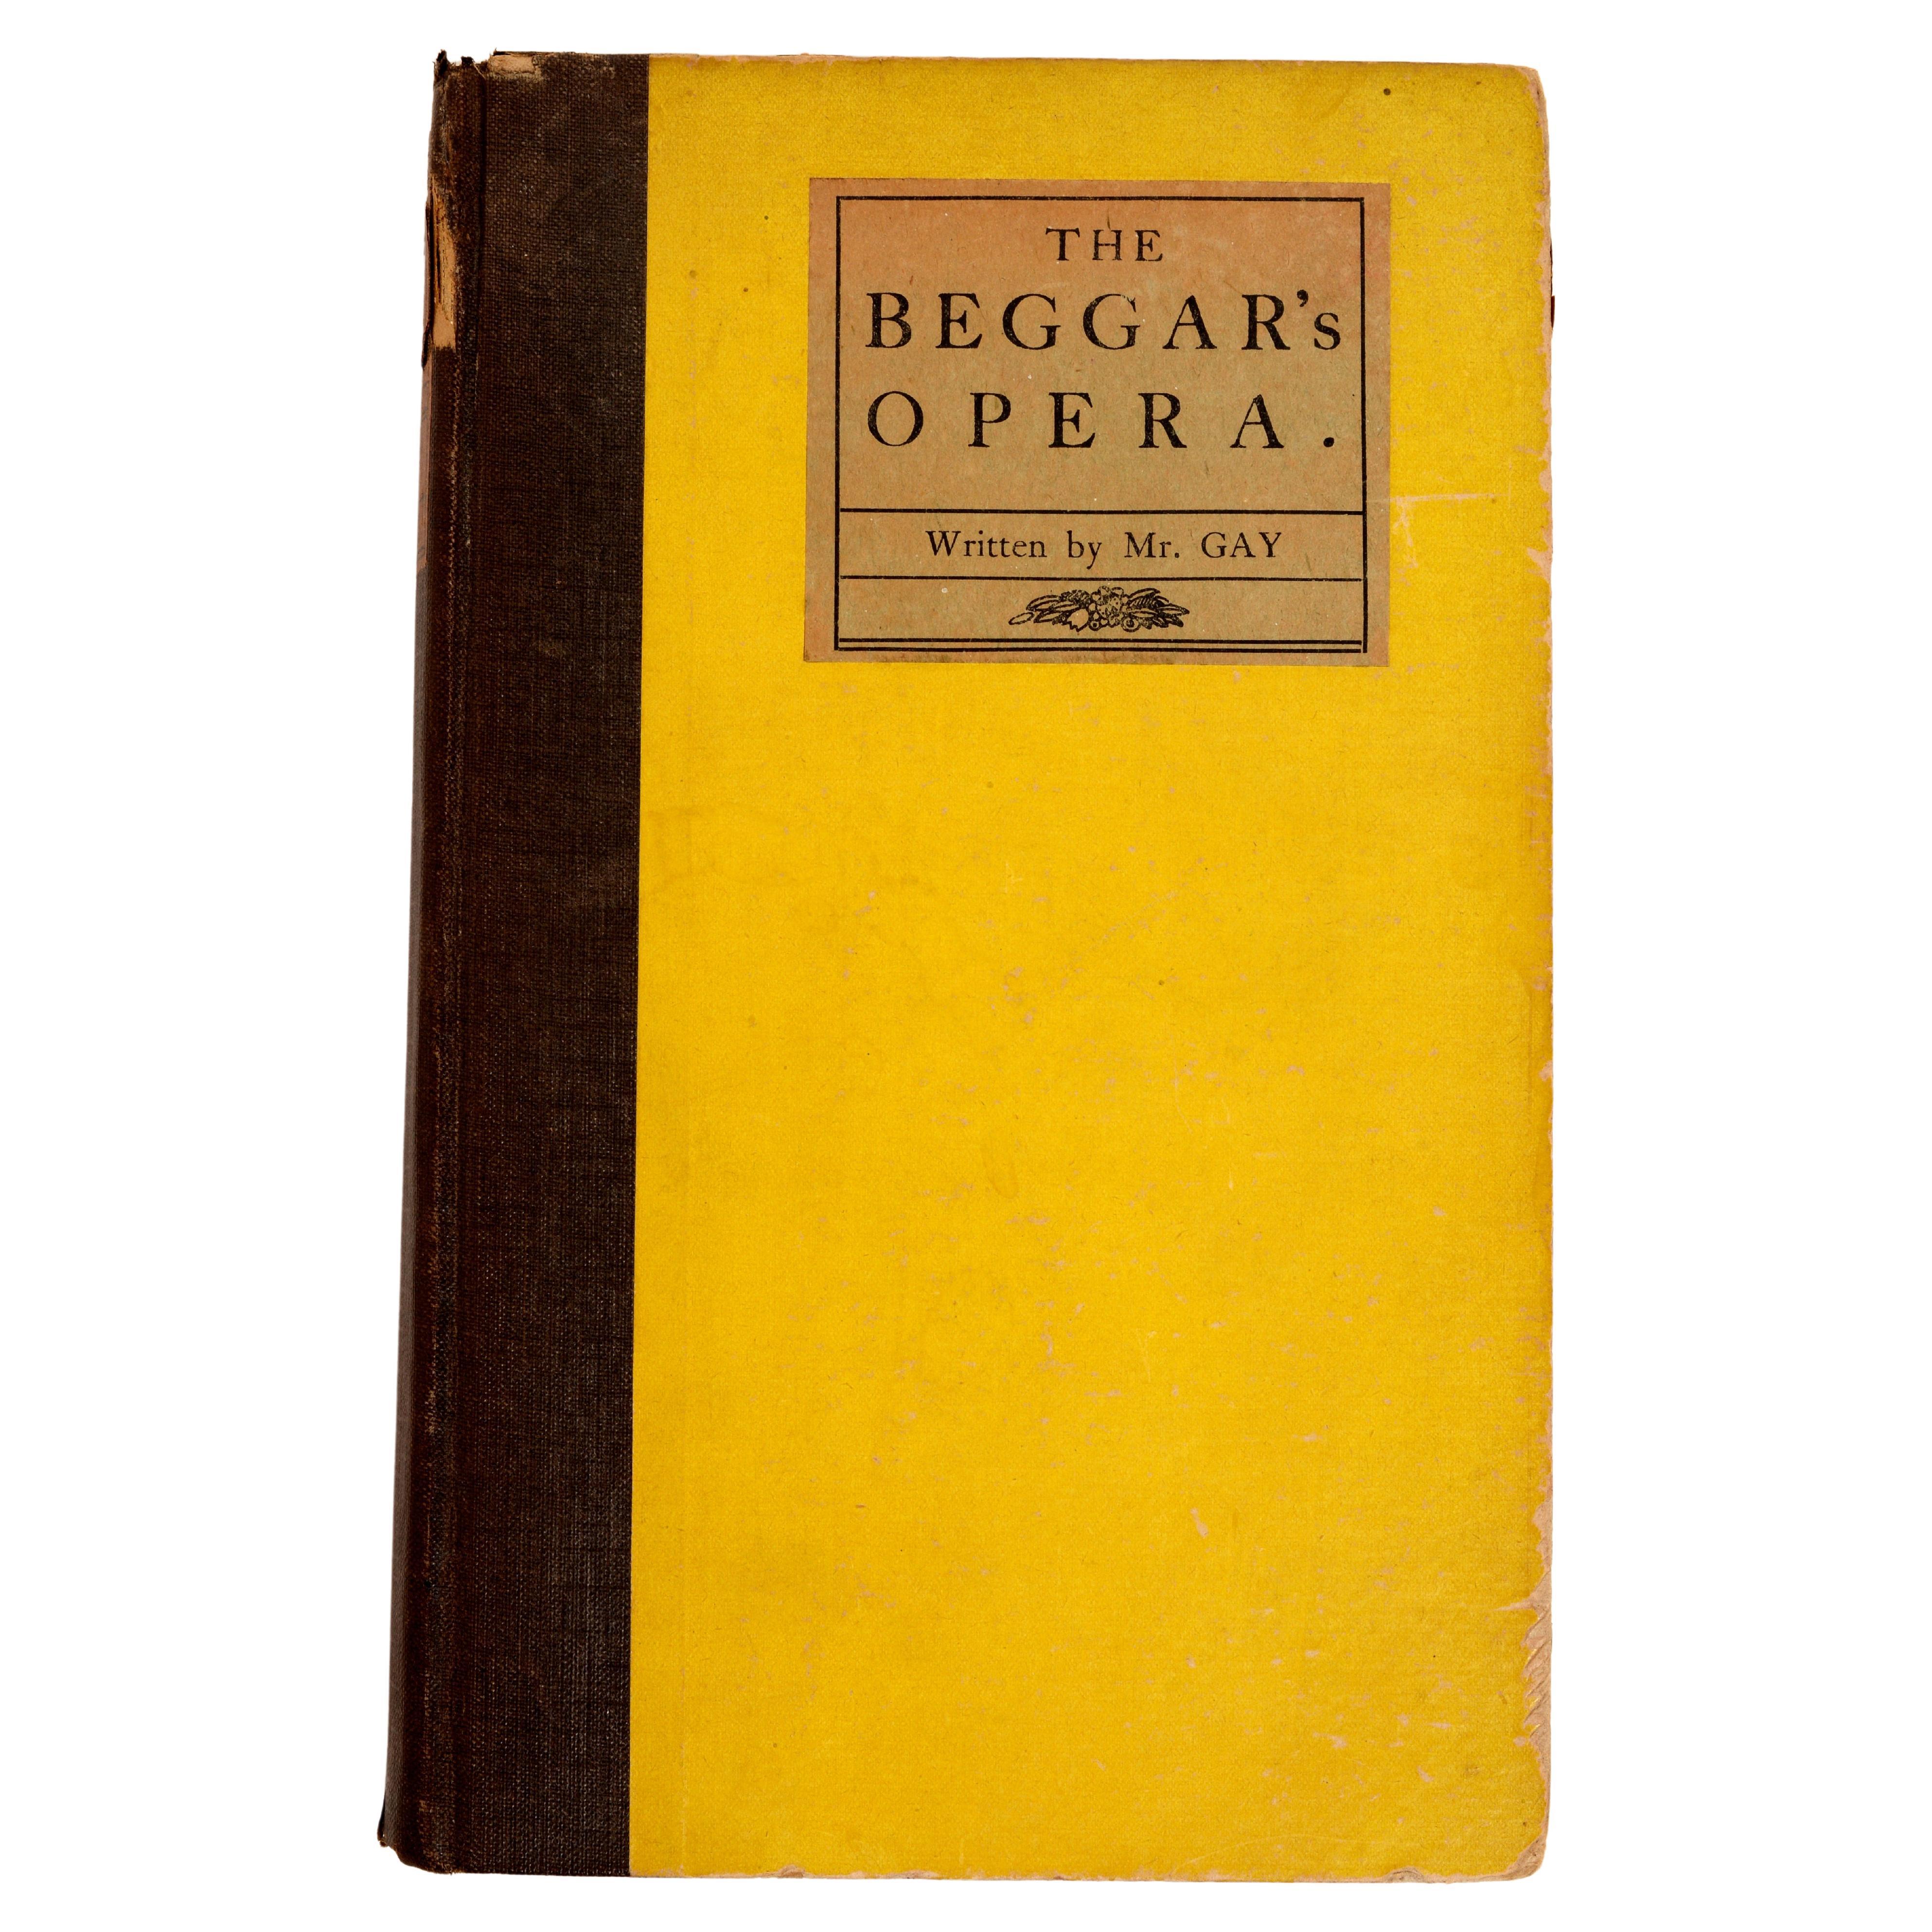 L'opéra Beggar's de M. Gay, copie personnelle de Nelson Doubleday avec sa plaque de livre en vente